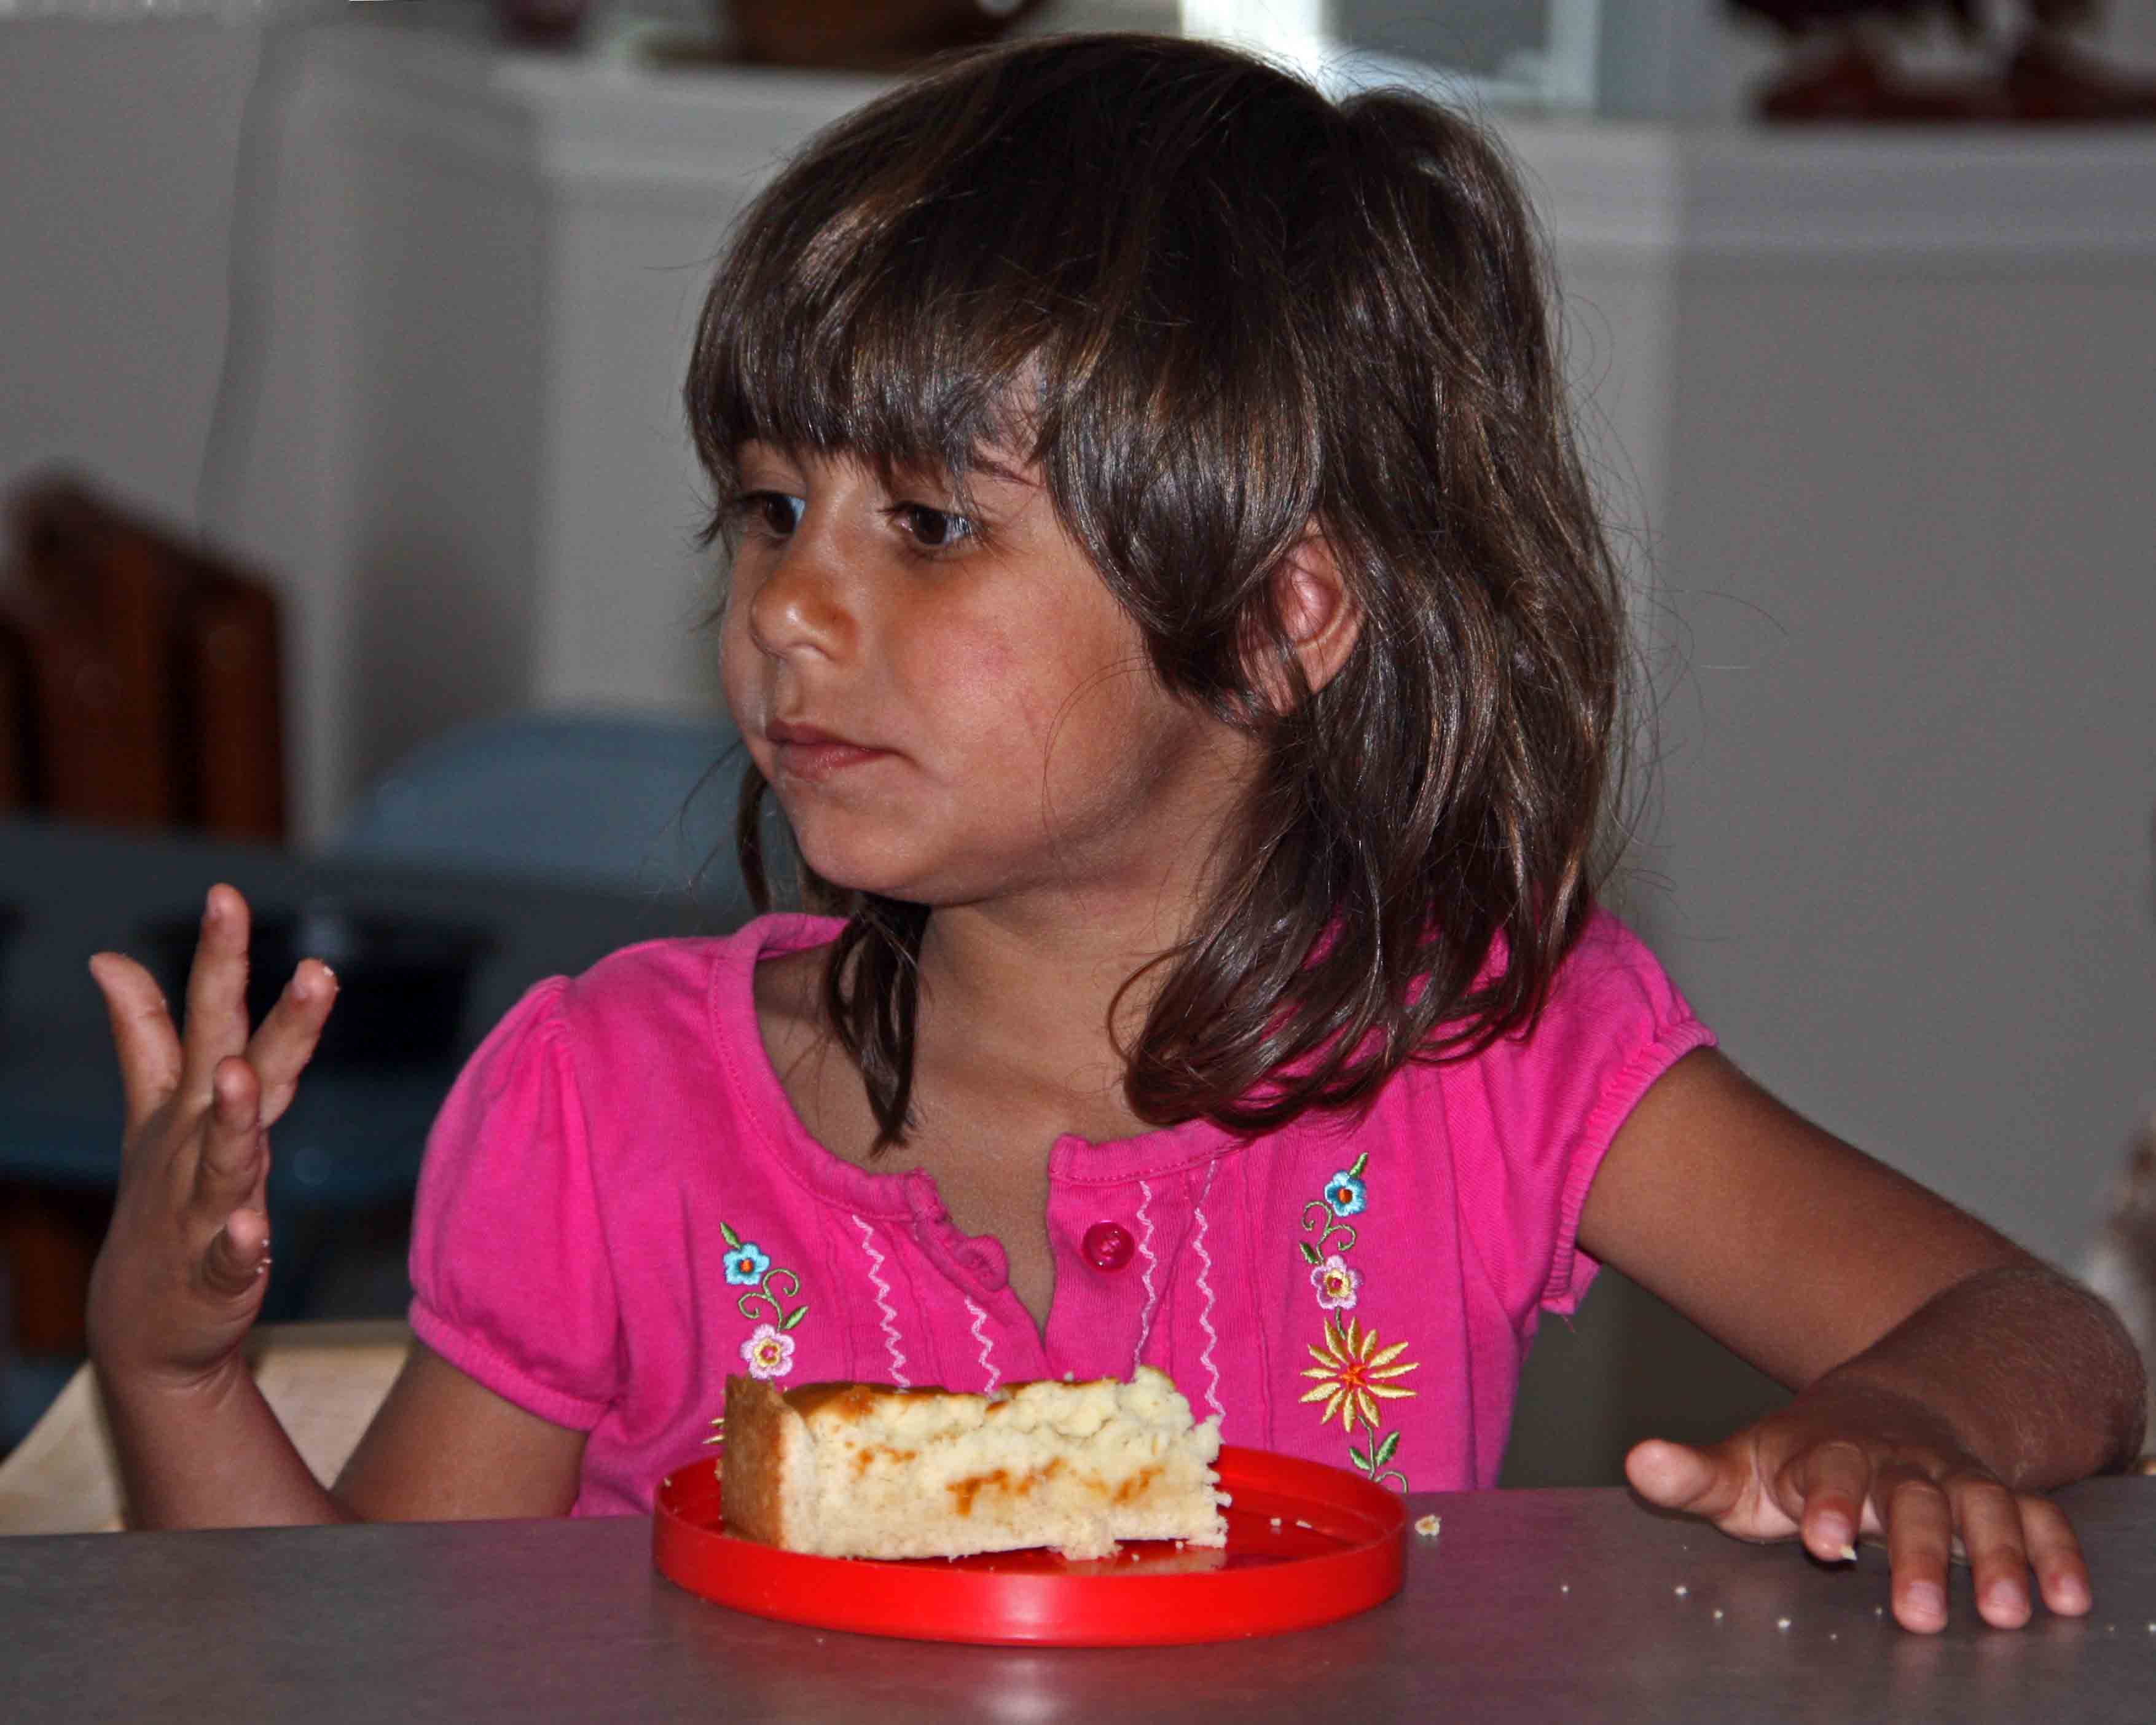 Maya enjoying her lemon cake